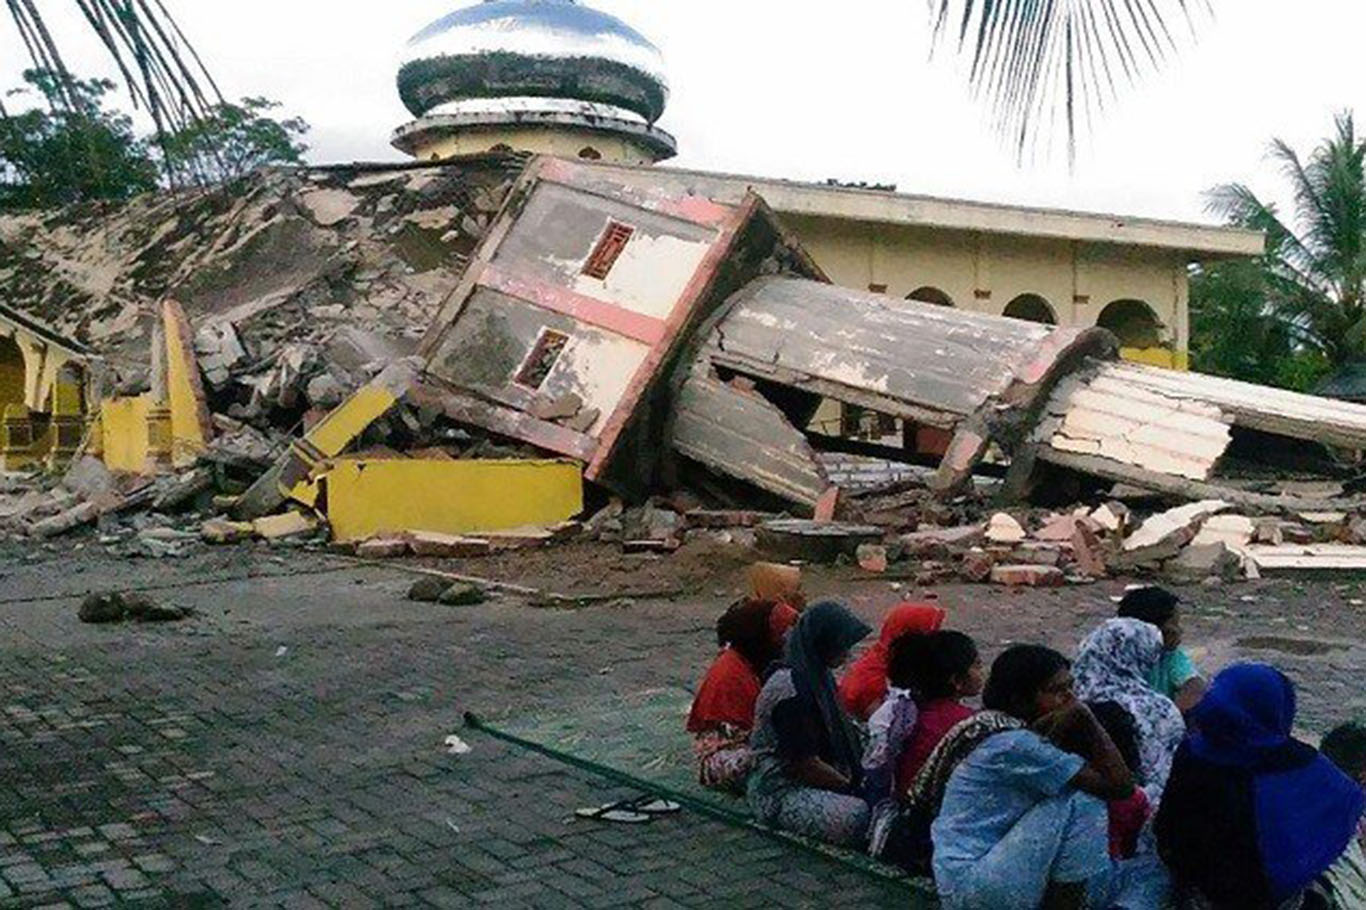 الاتحاد العالمي لعلماء المسلمين يدعوا لإرسال إغاثة عاجلة إلى إندونيسيا